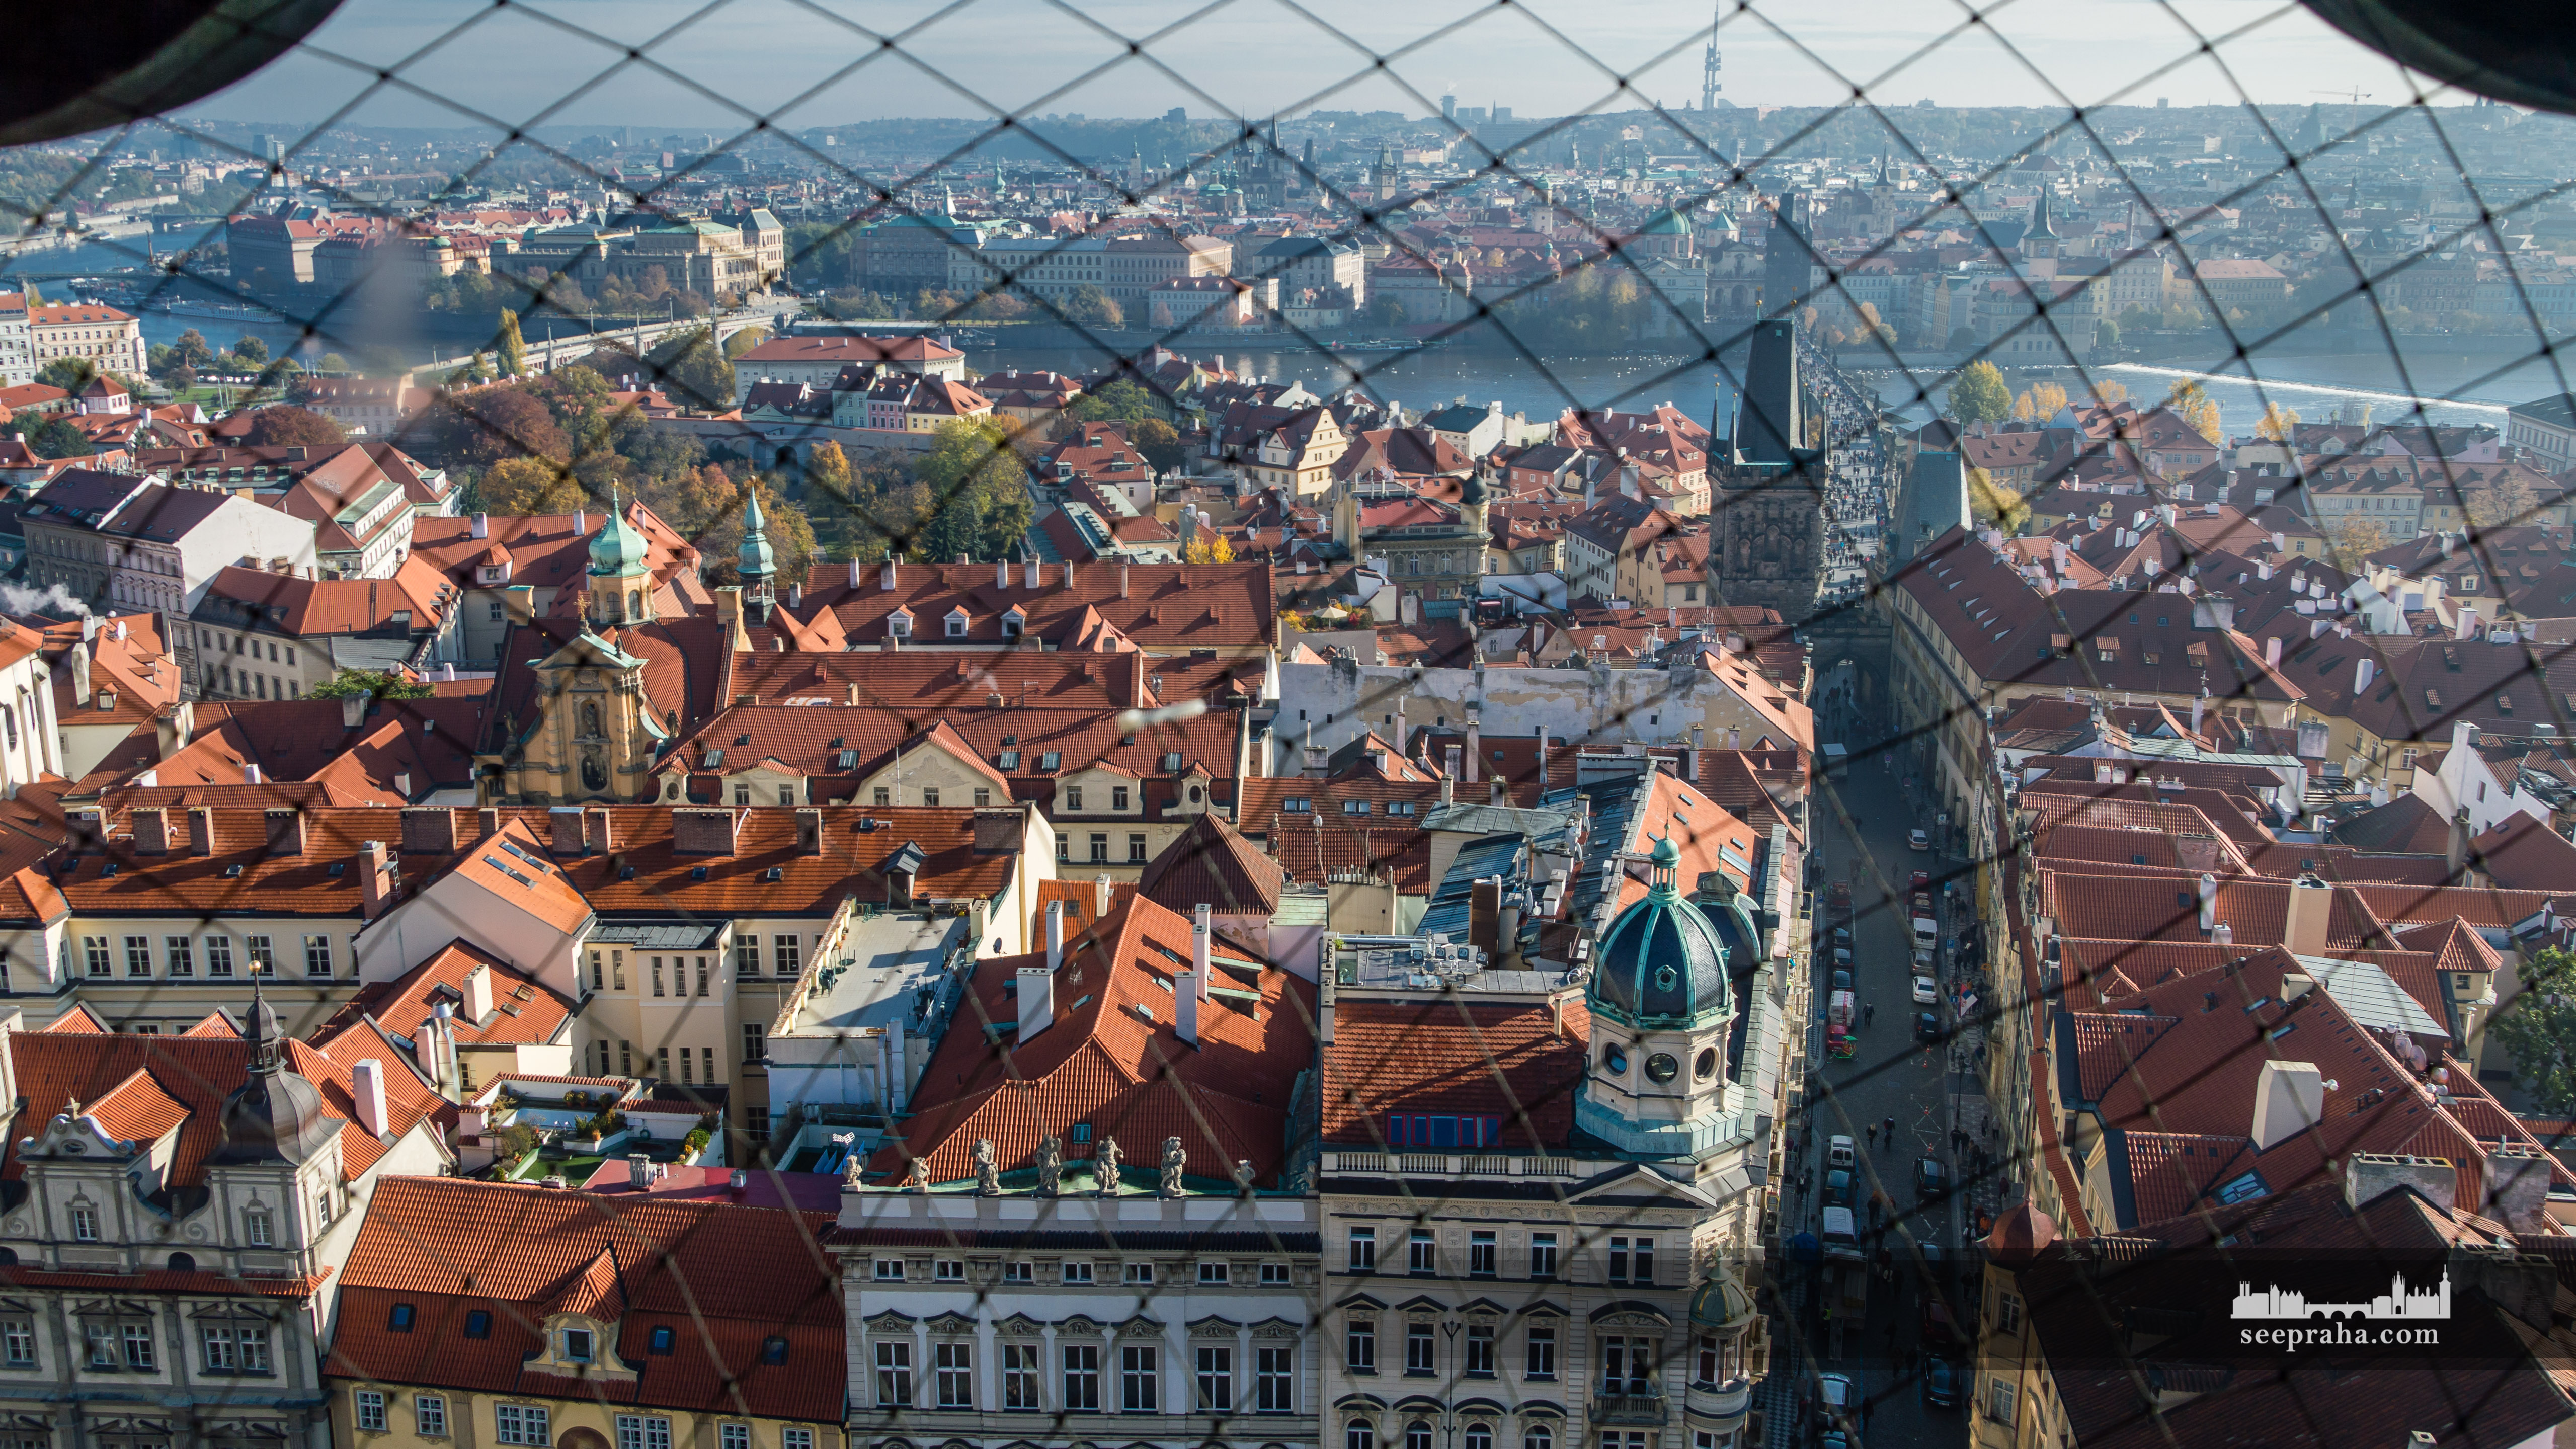 Výhled z vrcholu zvonice kostela svatého Mikuláše, Praha, Česko